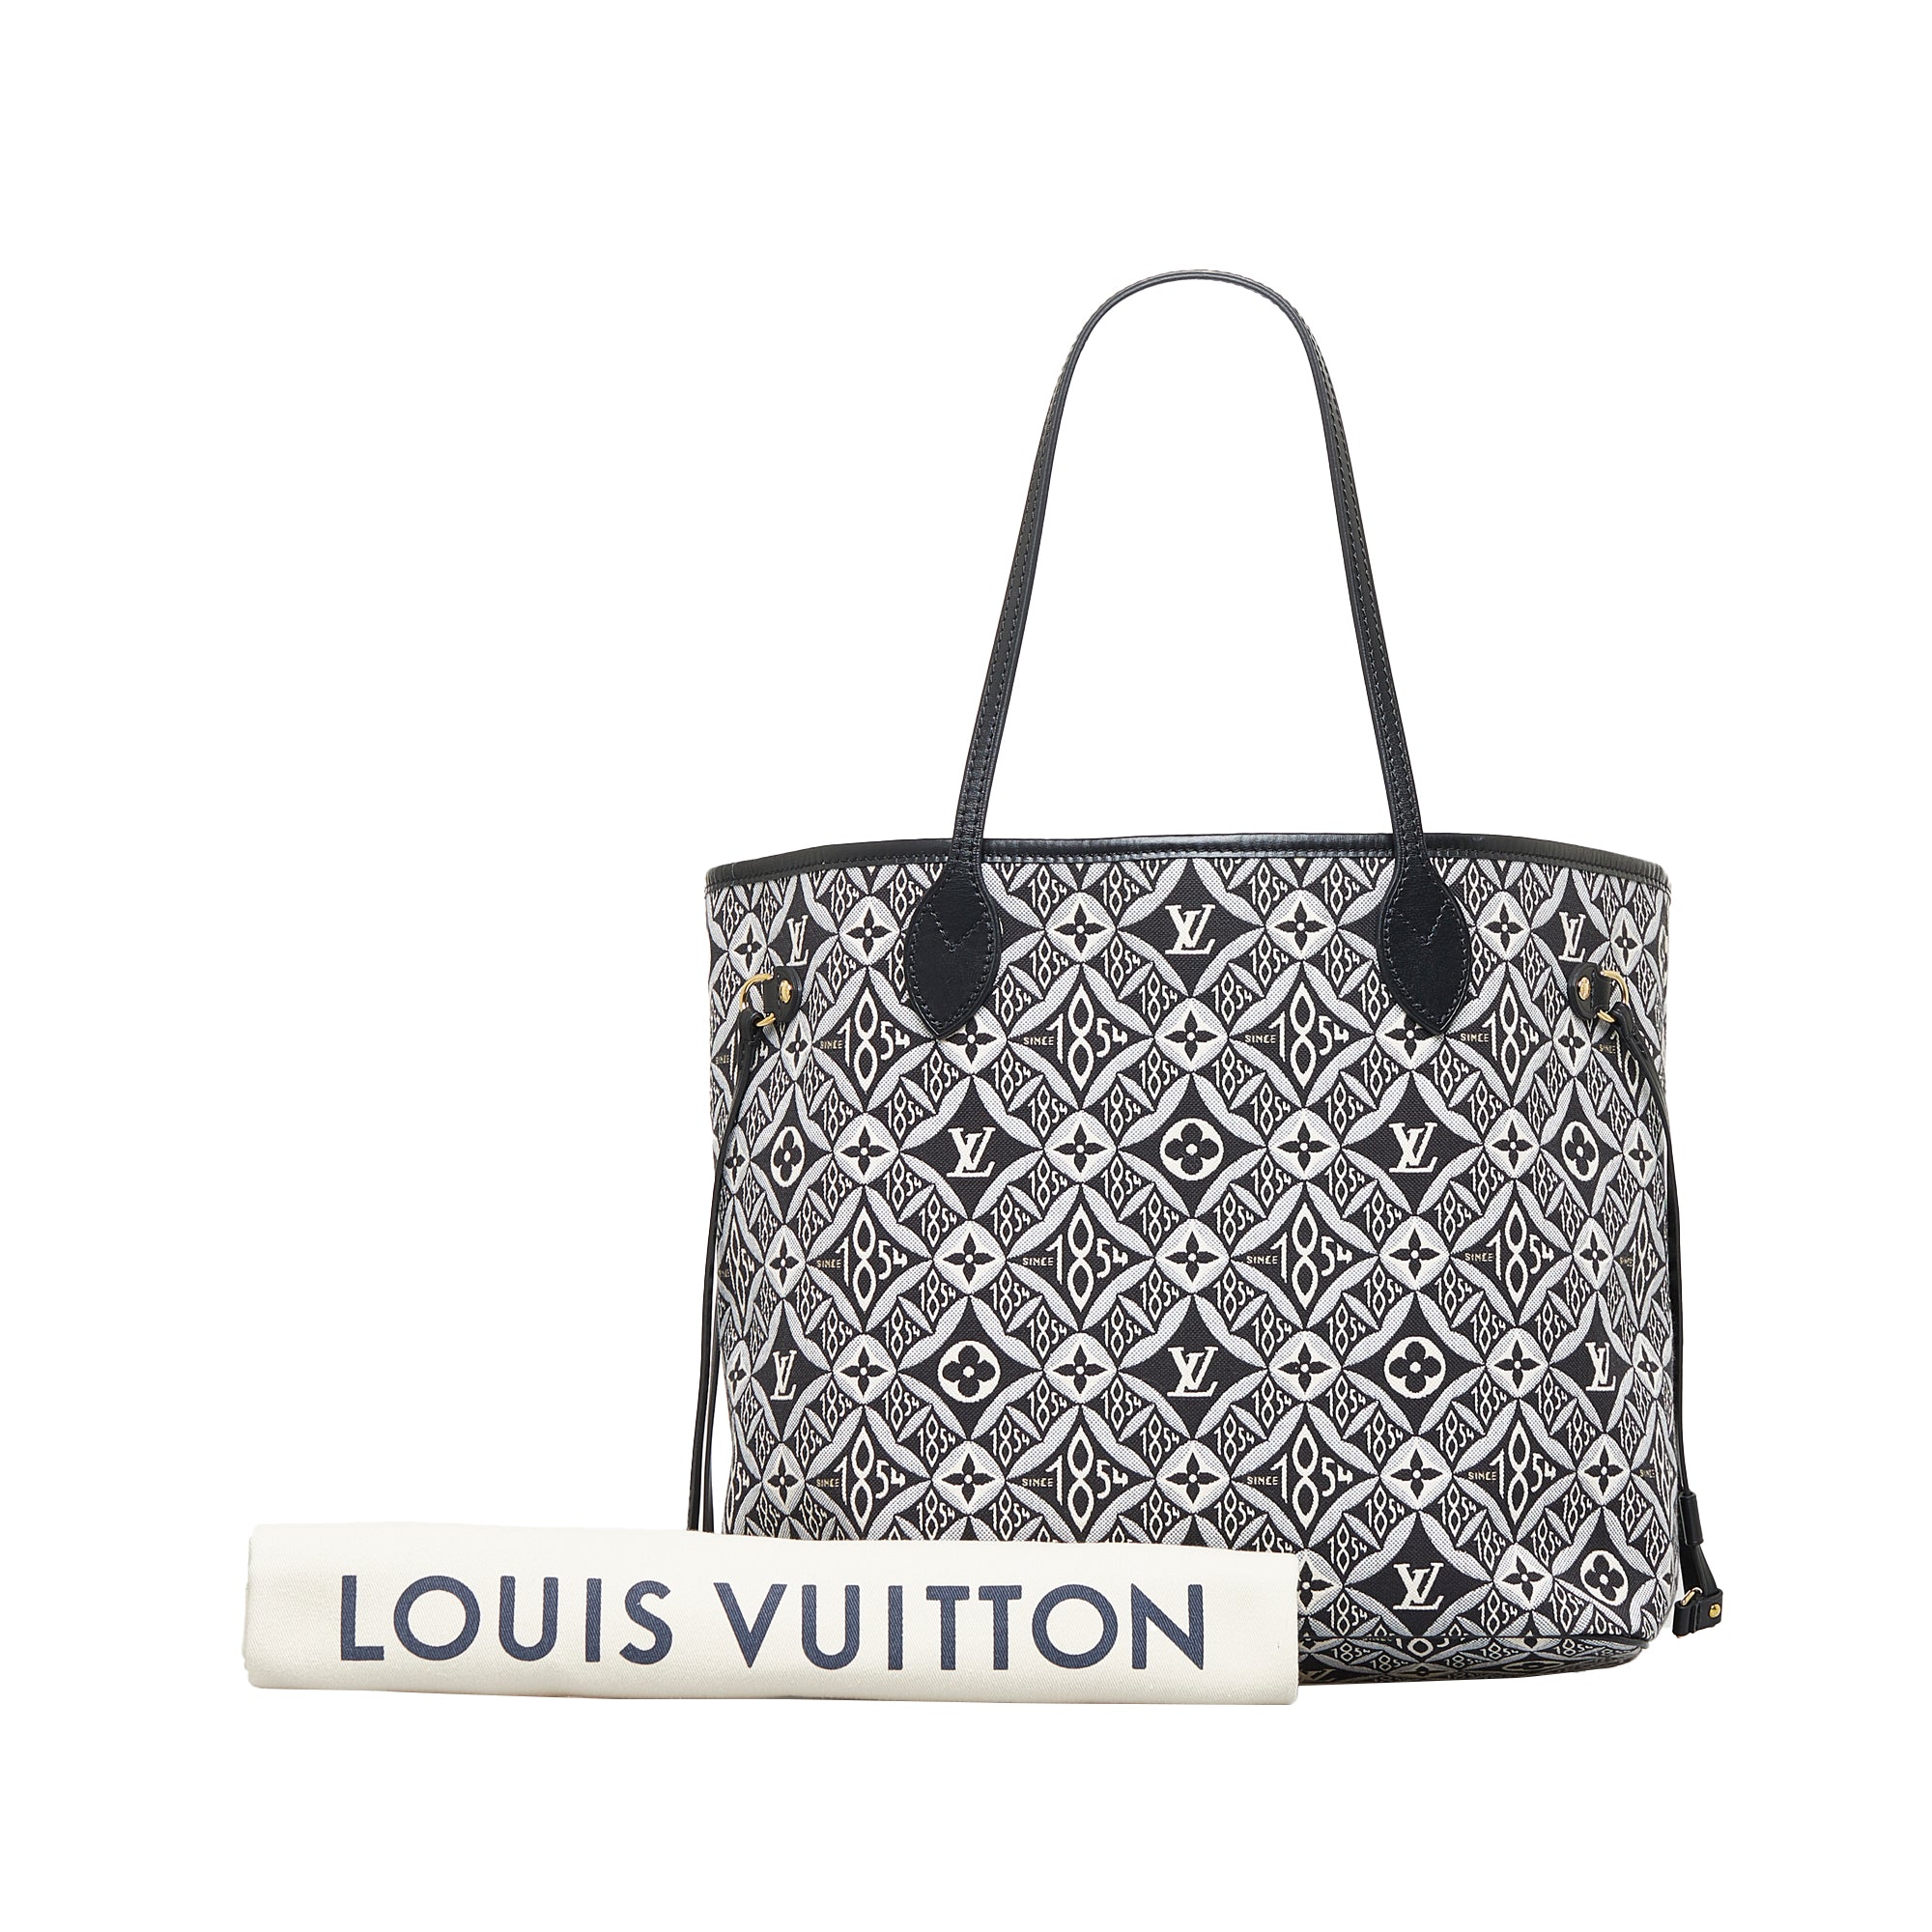 Louis Vuitton Neverfull Since 1854